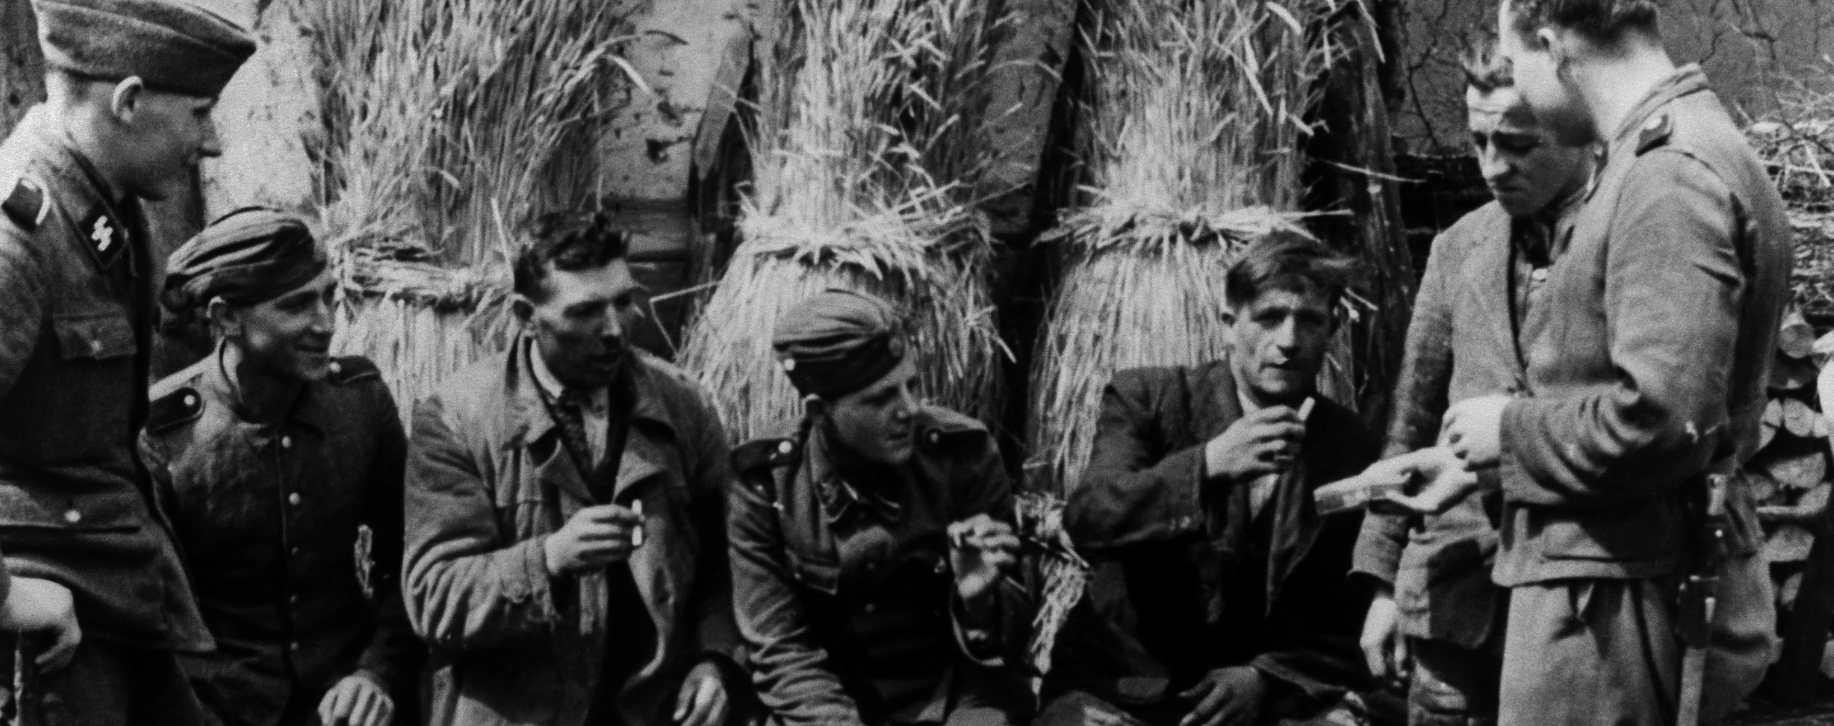 Солдати дивізії СС «Галичина» спілкуються з жителями галицького села, 1944 рік